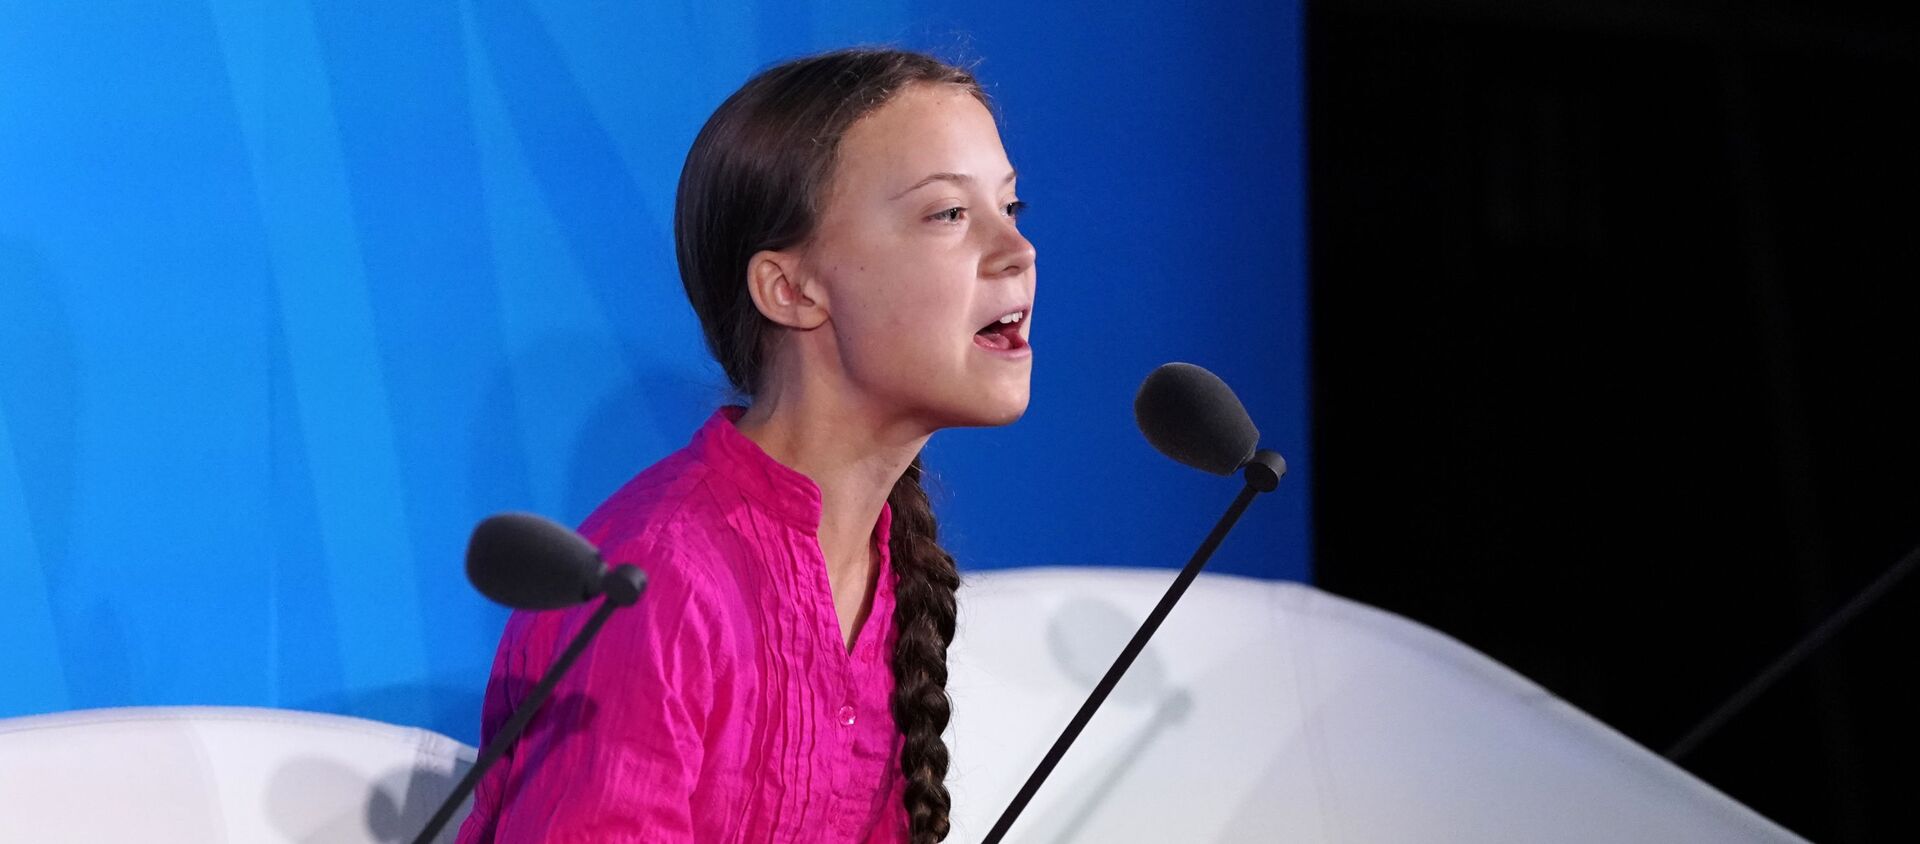 İsveçli iklim aktivisti 16 yaşındaki Greta Thunberg, Benim burada olmamam gerek, okyanusun ötesinde okulda olmam gerek. Sizler ne cesaretle bizden umut bekliyorsunuz. Boş sözlerinizle çocukluğumu ve hayallerimi çaldınız dedi. - Sputnik Türkiye, 1920, 23.09.2019